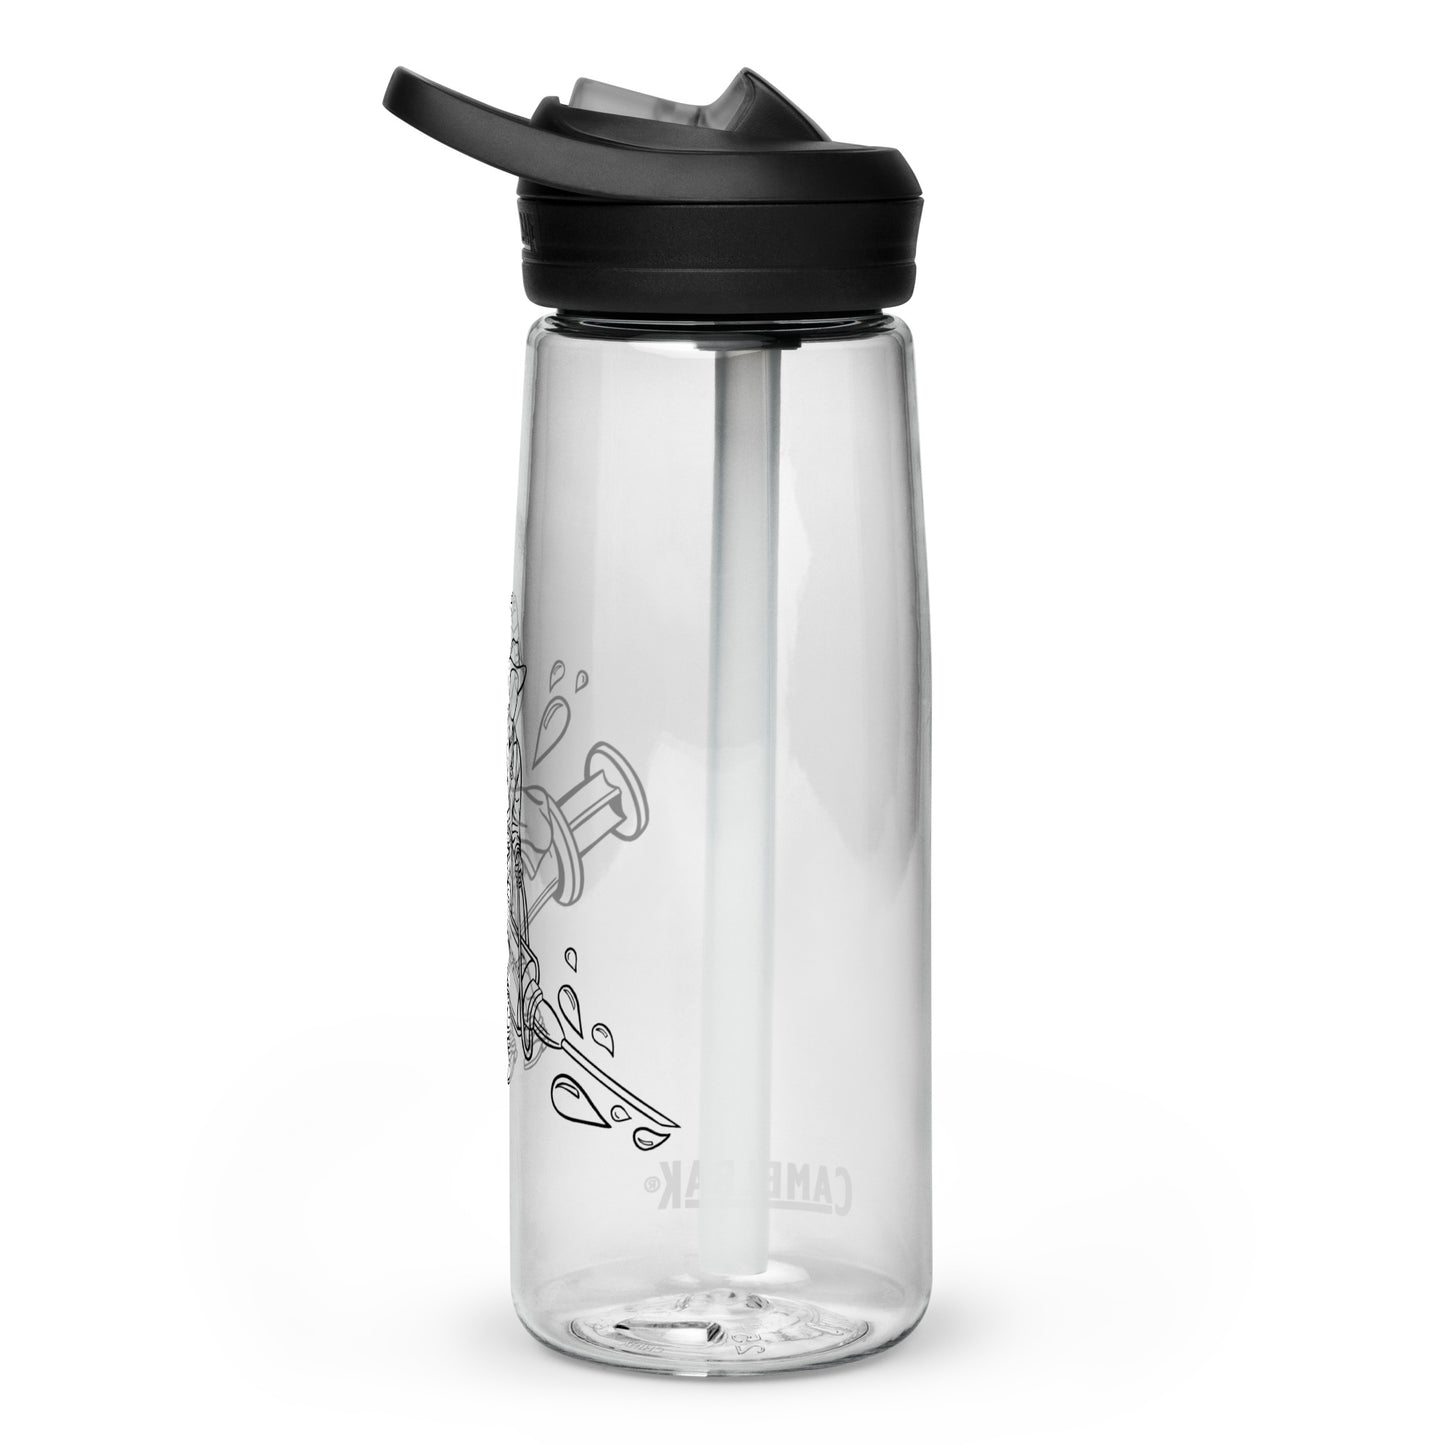 TWNM- Camelbak Water Bottle